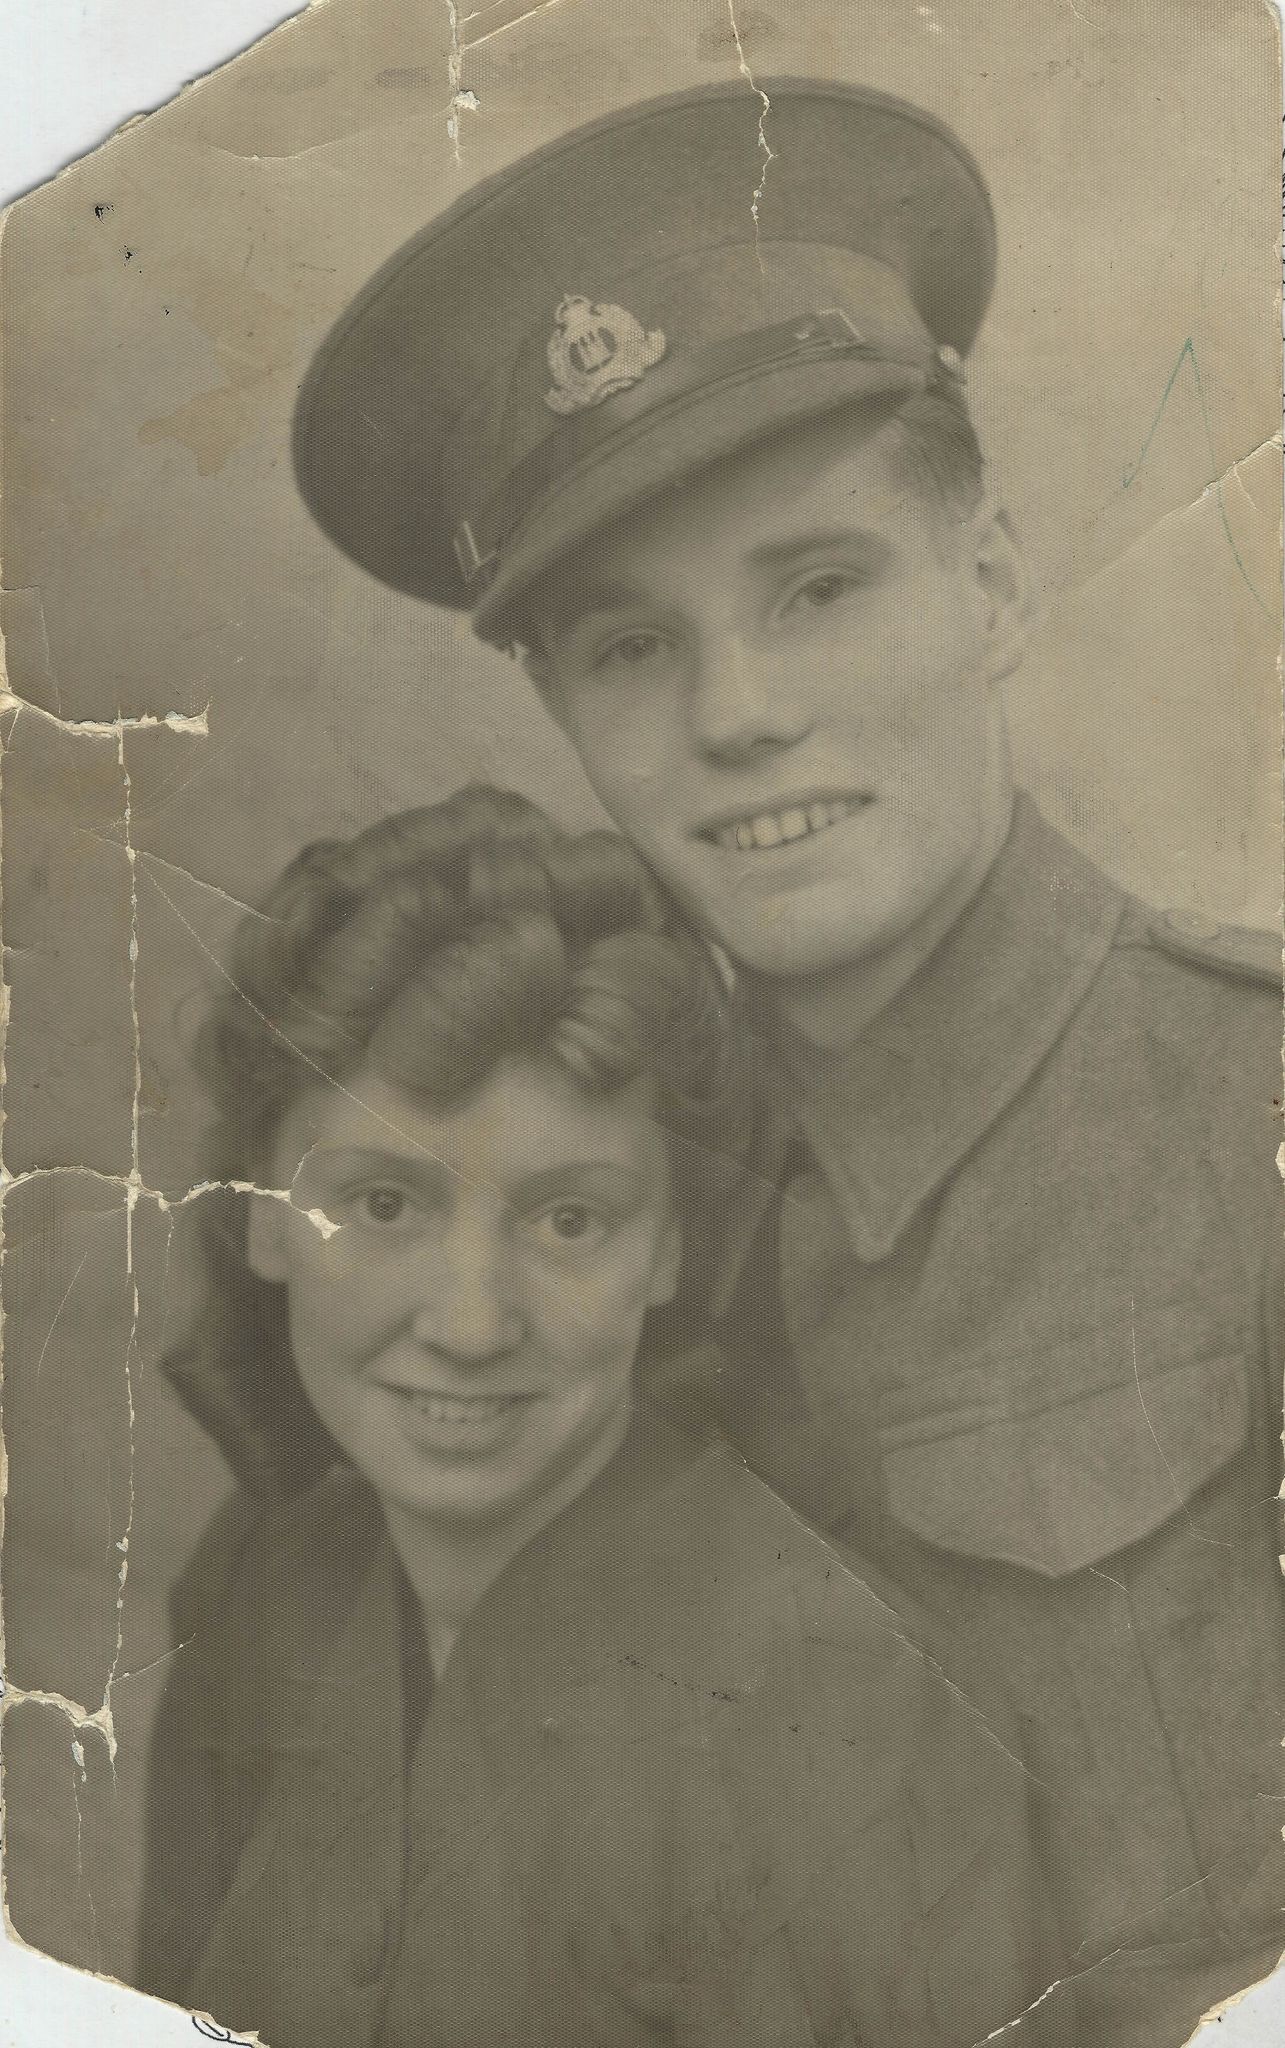 Damaged photo of wartime couple